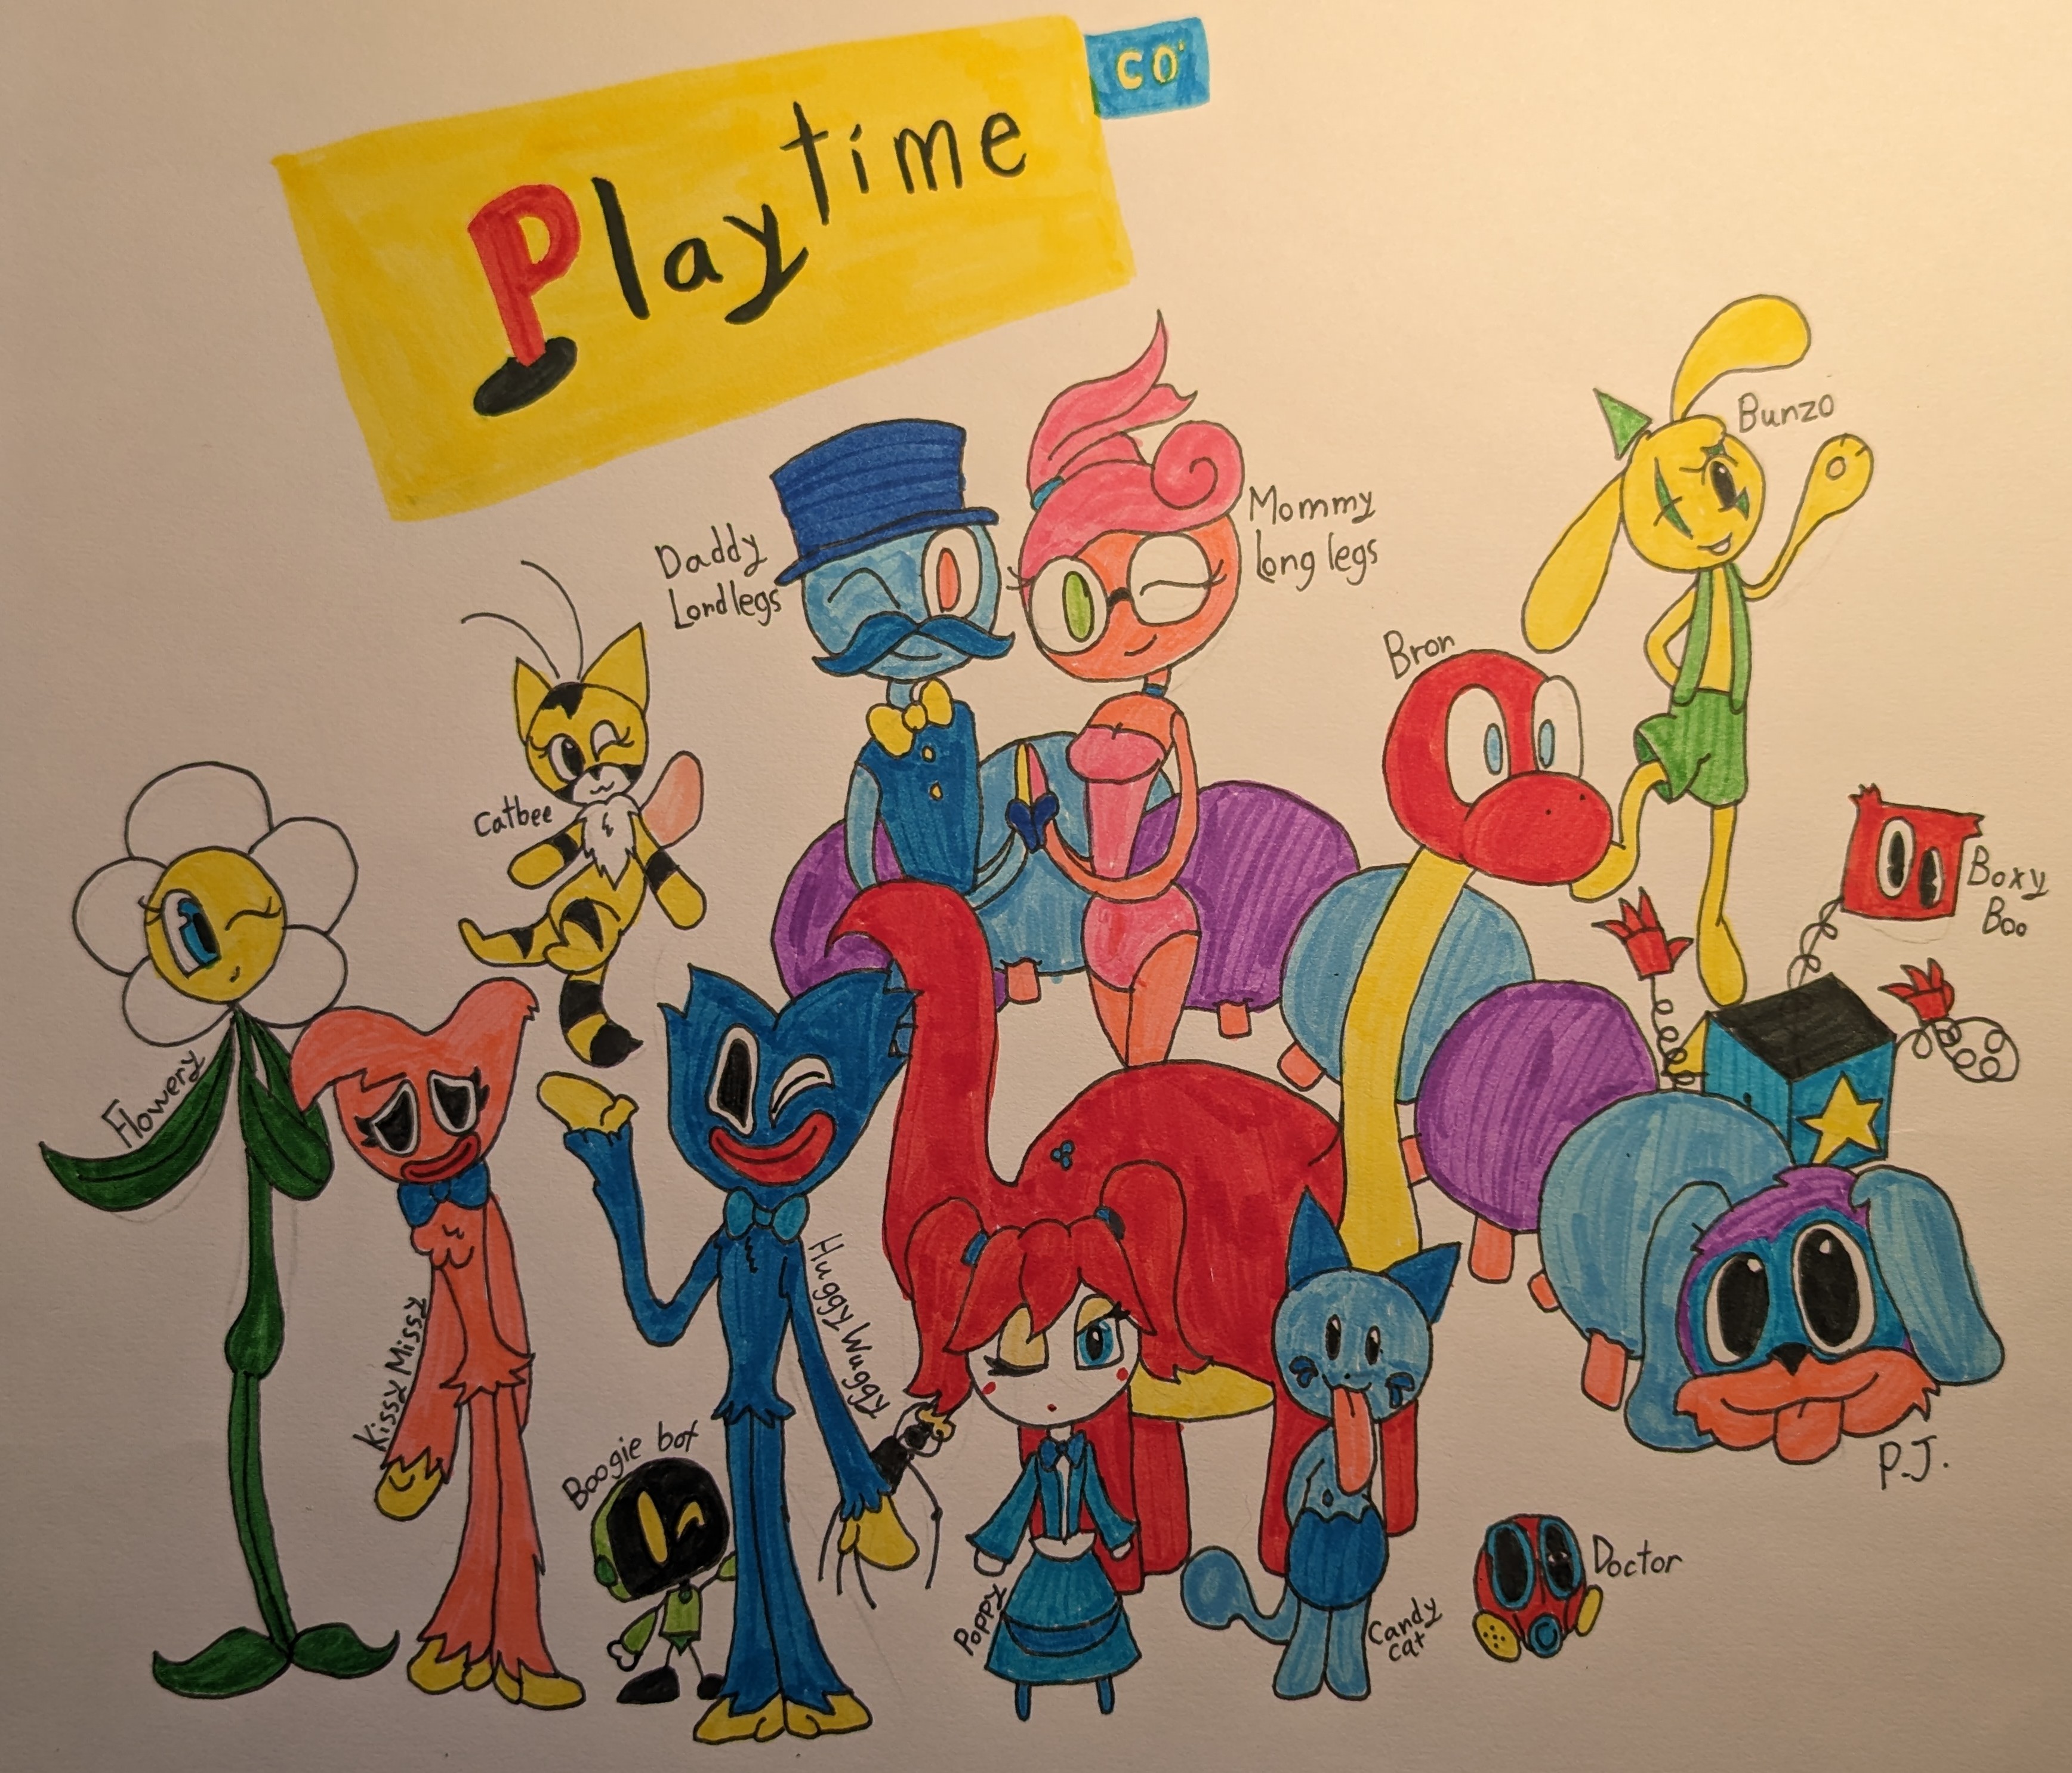 Poppy/Project Playtime Redesigns #3 : r/PoppyPlaytime